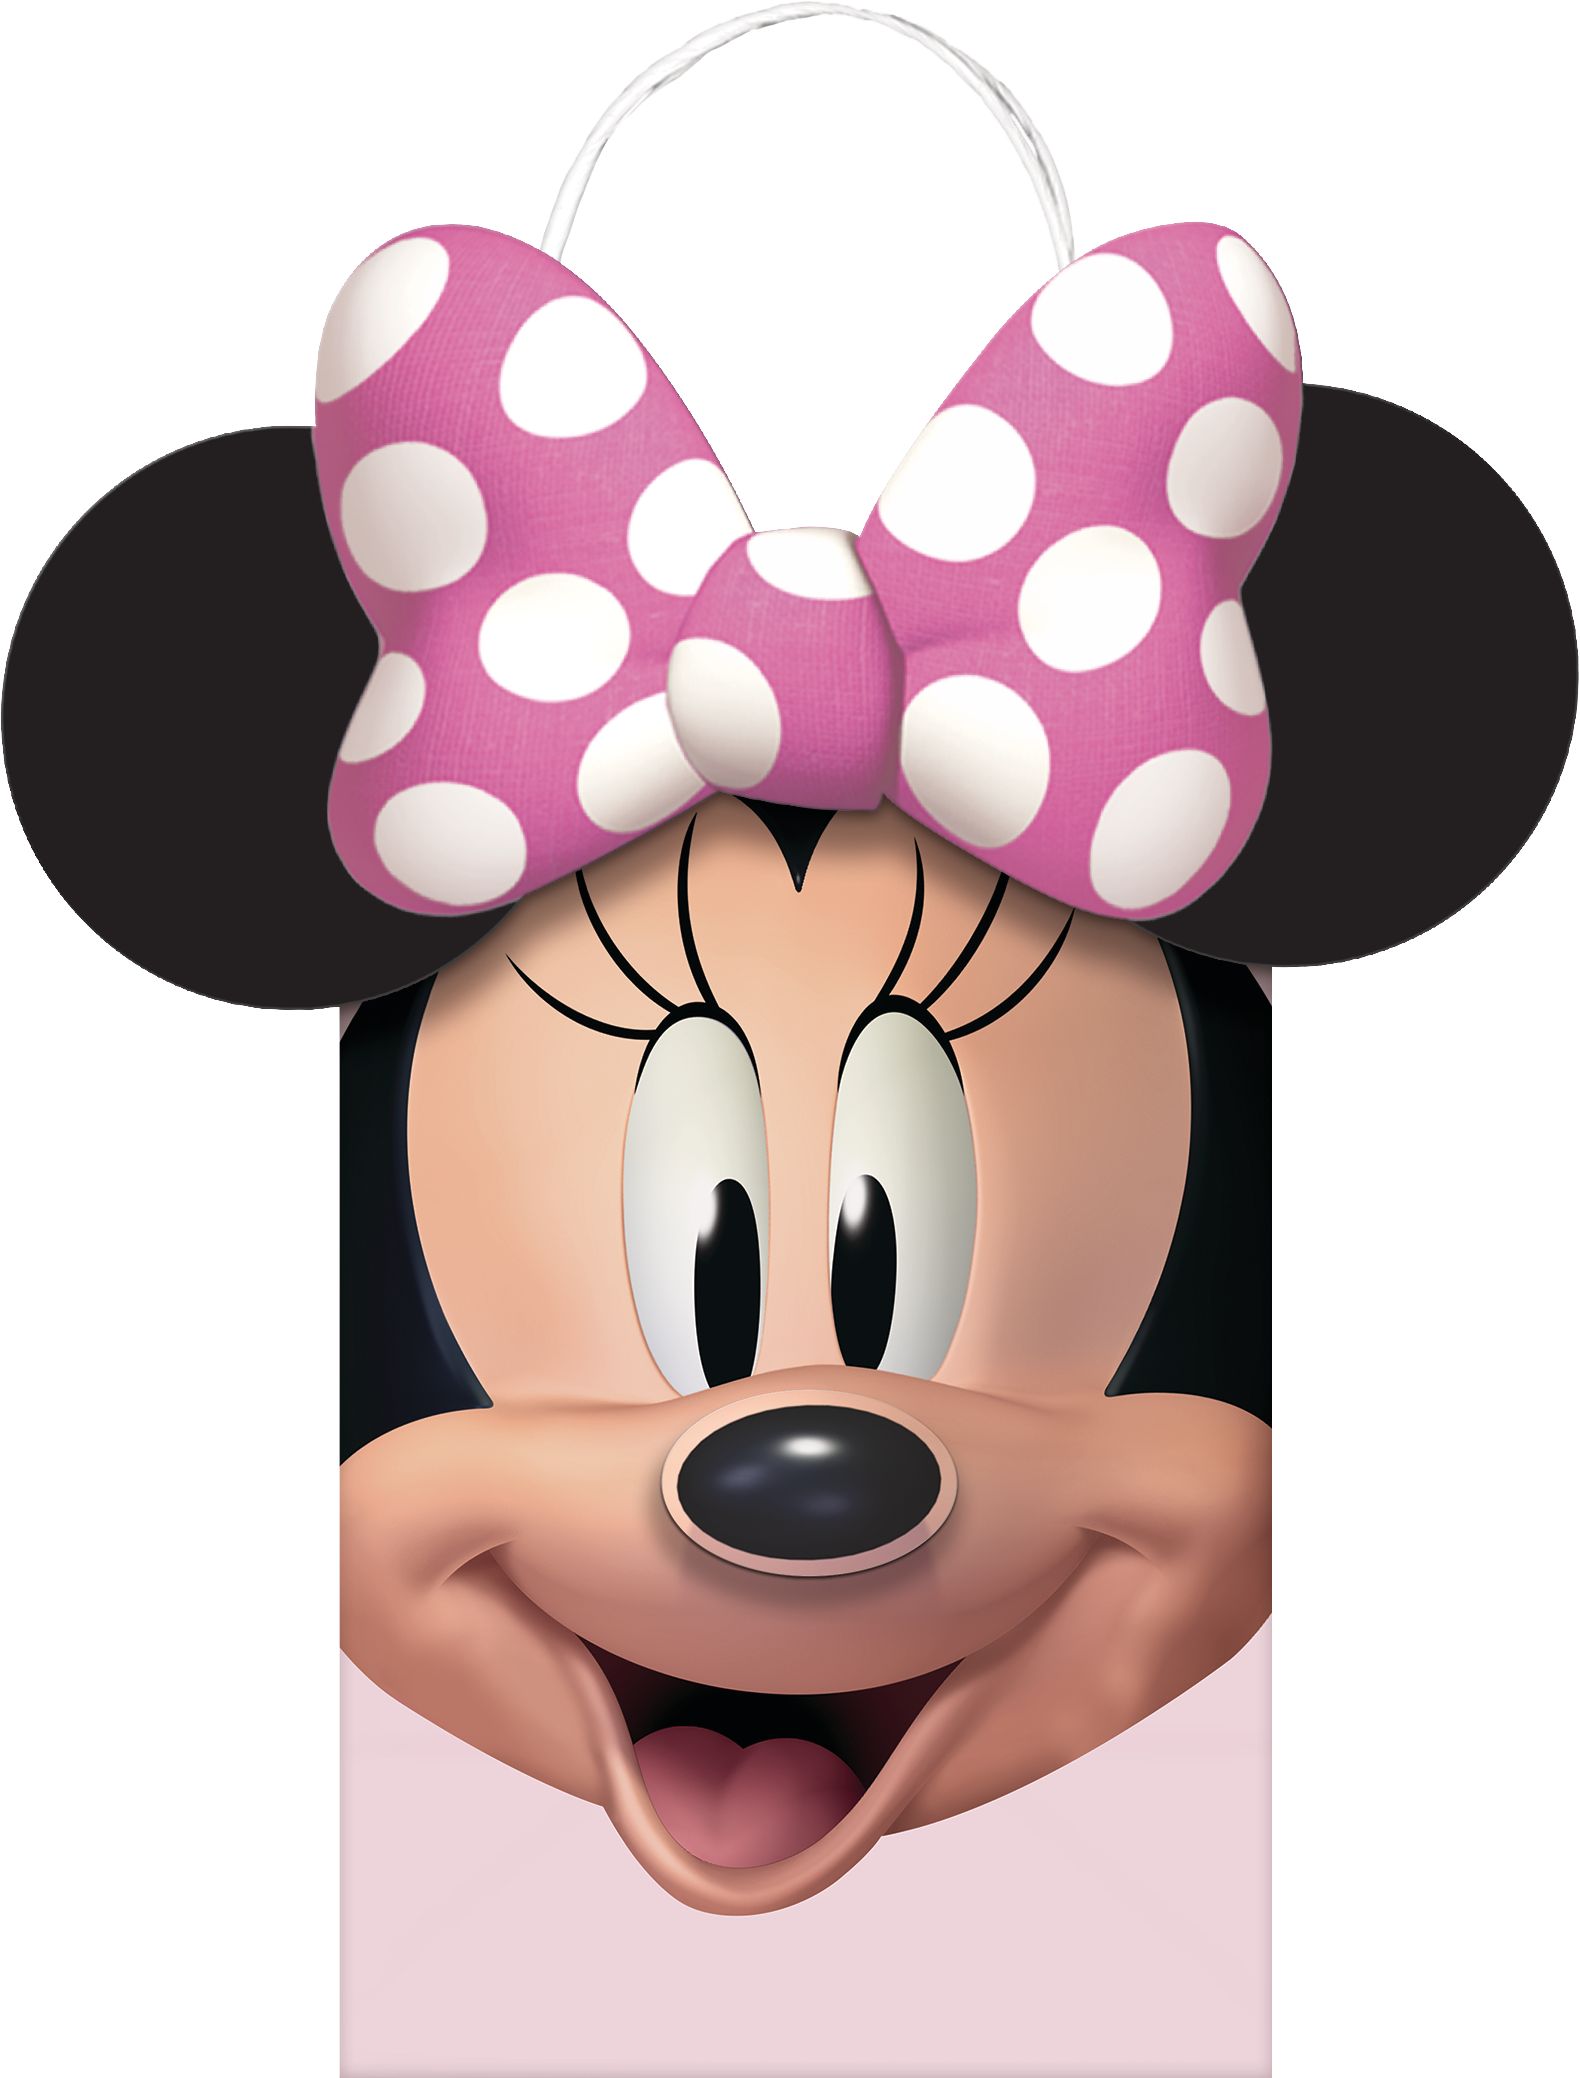 Sac en plastique Minnie Mouse Cartoon pour enfants, fete d